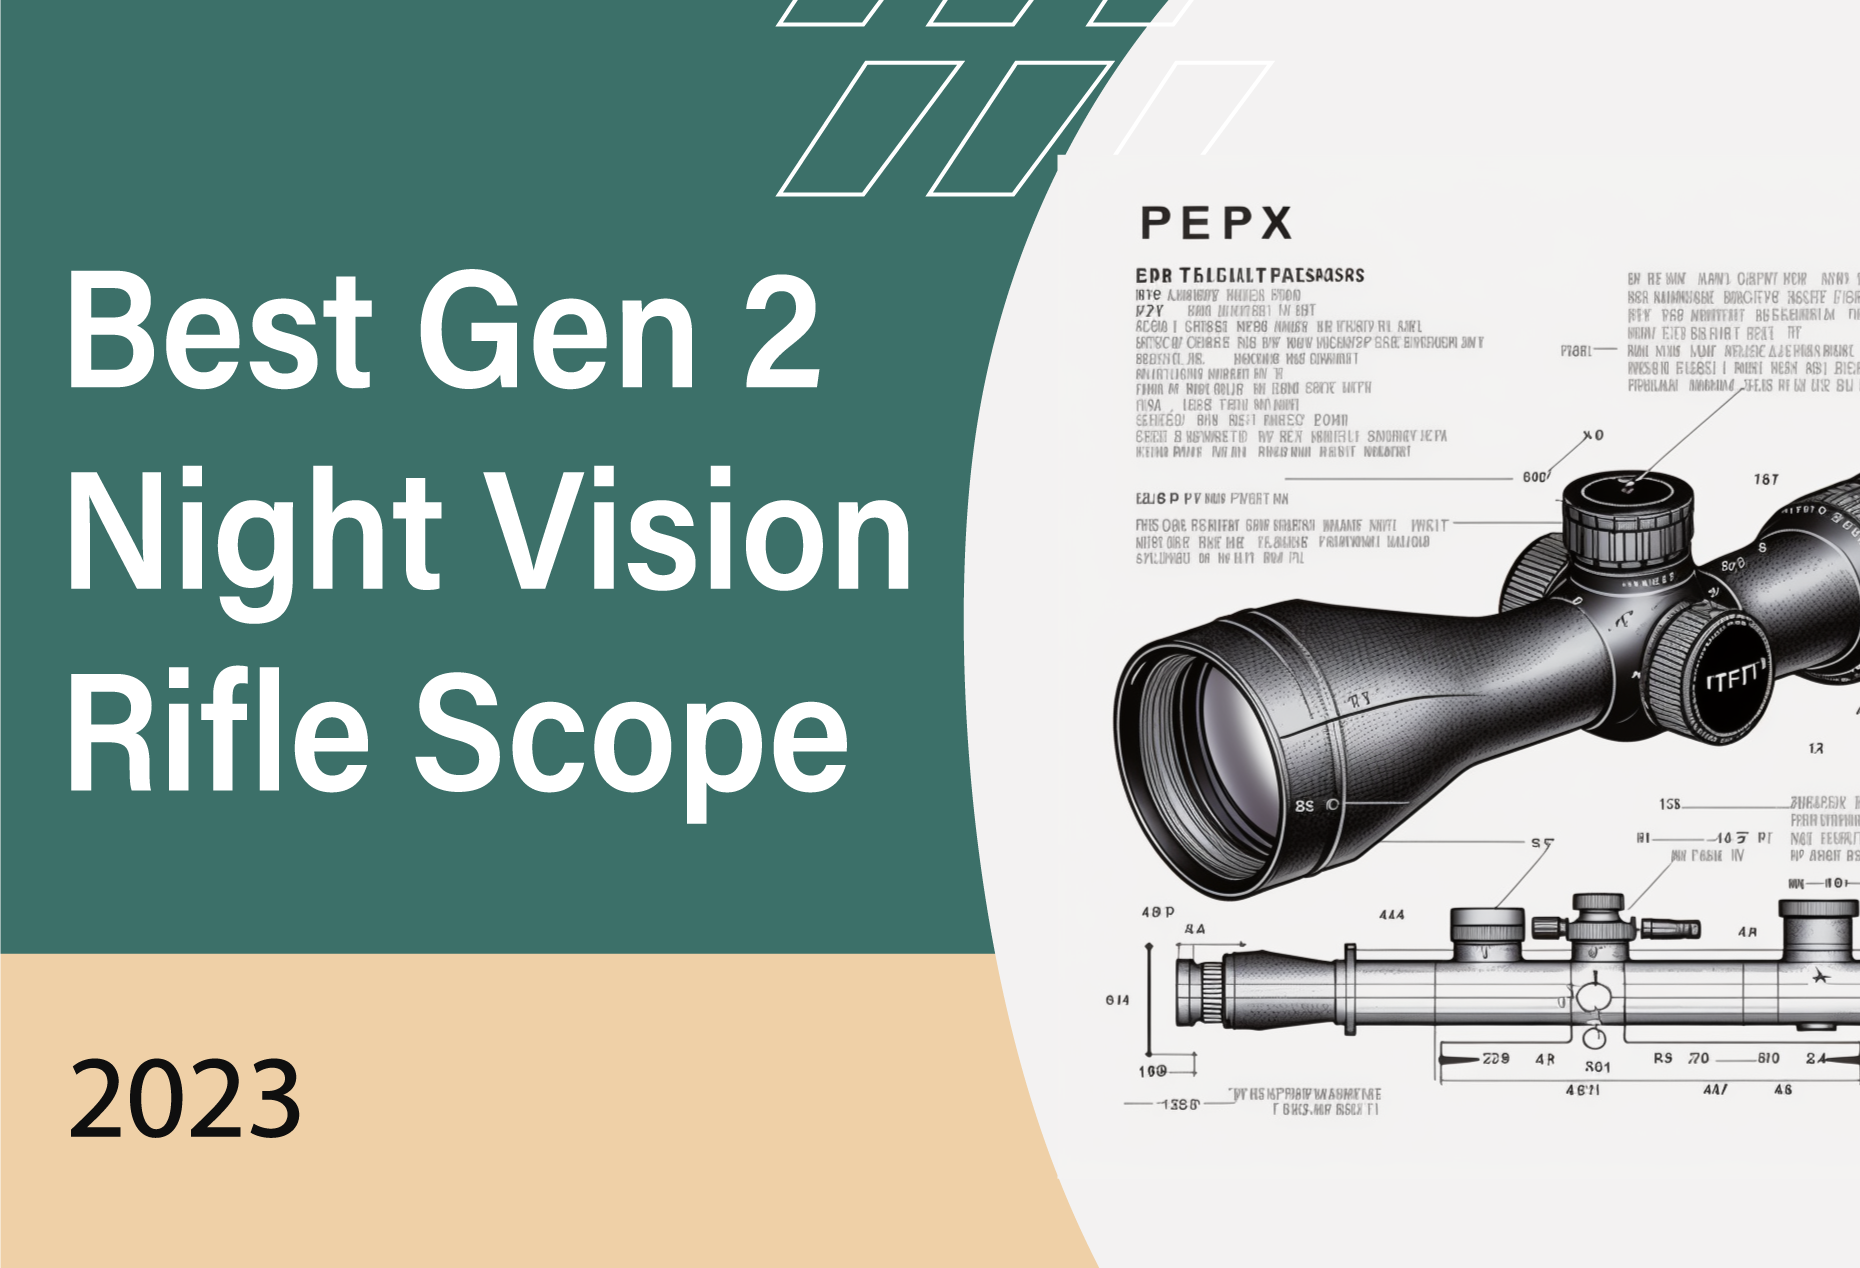 Best Gen 2 Night Vision Rifle Scope